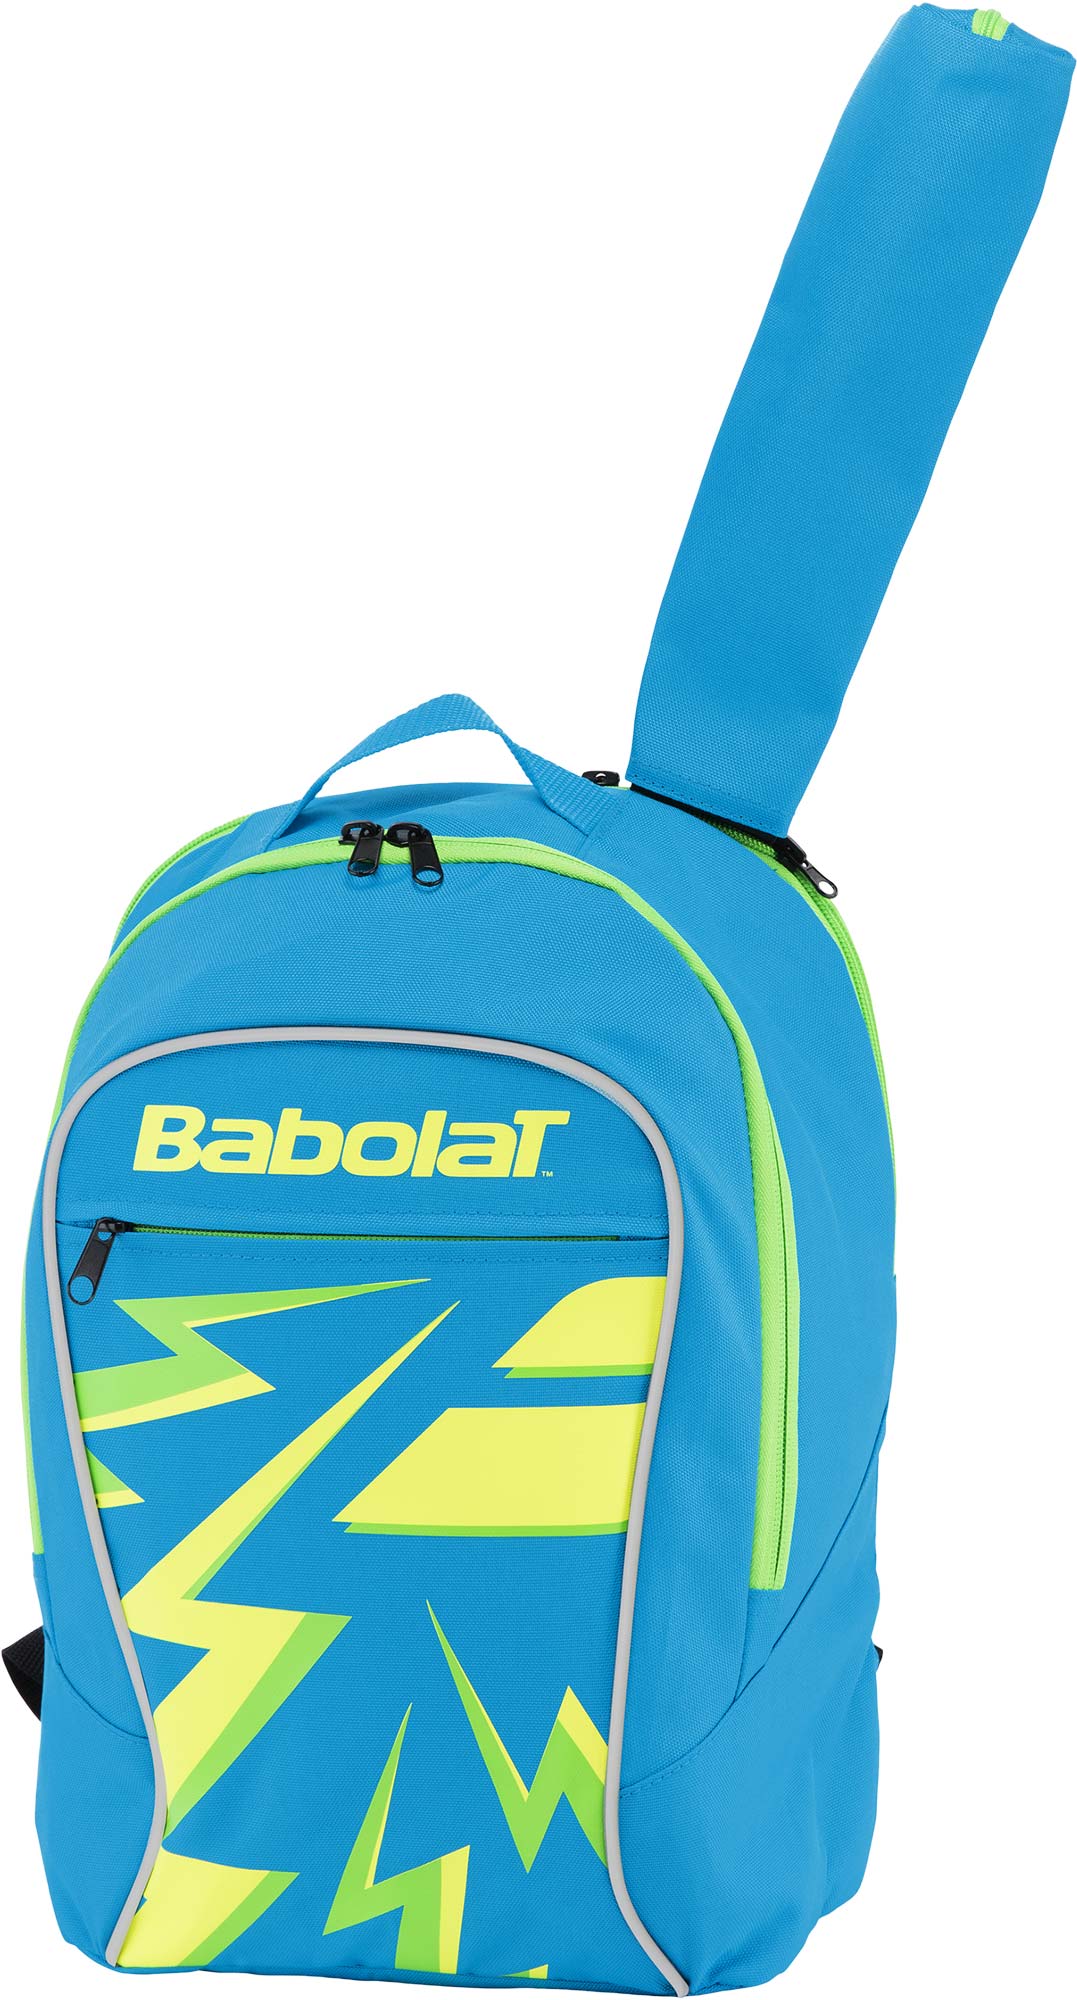 Tennis backpack